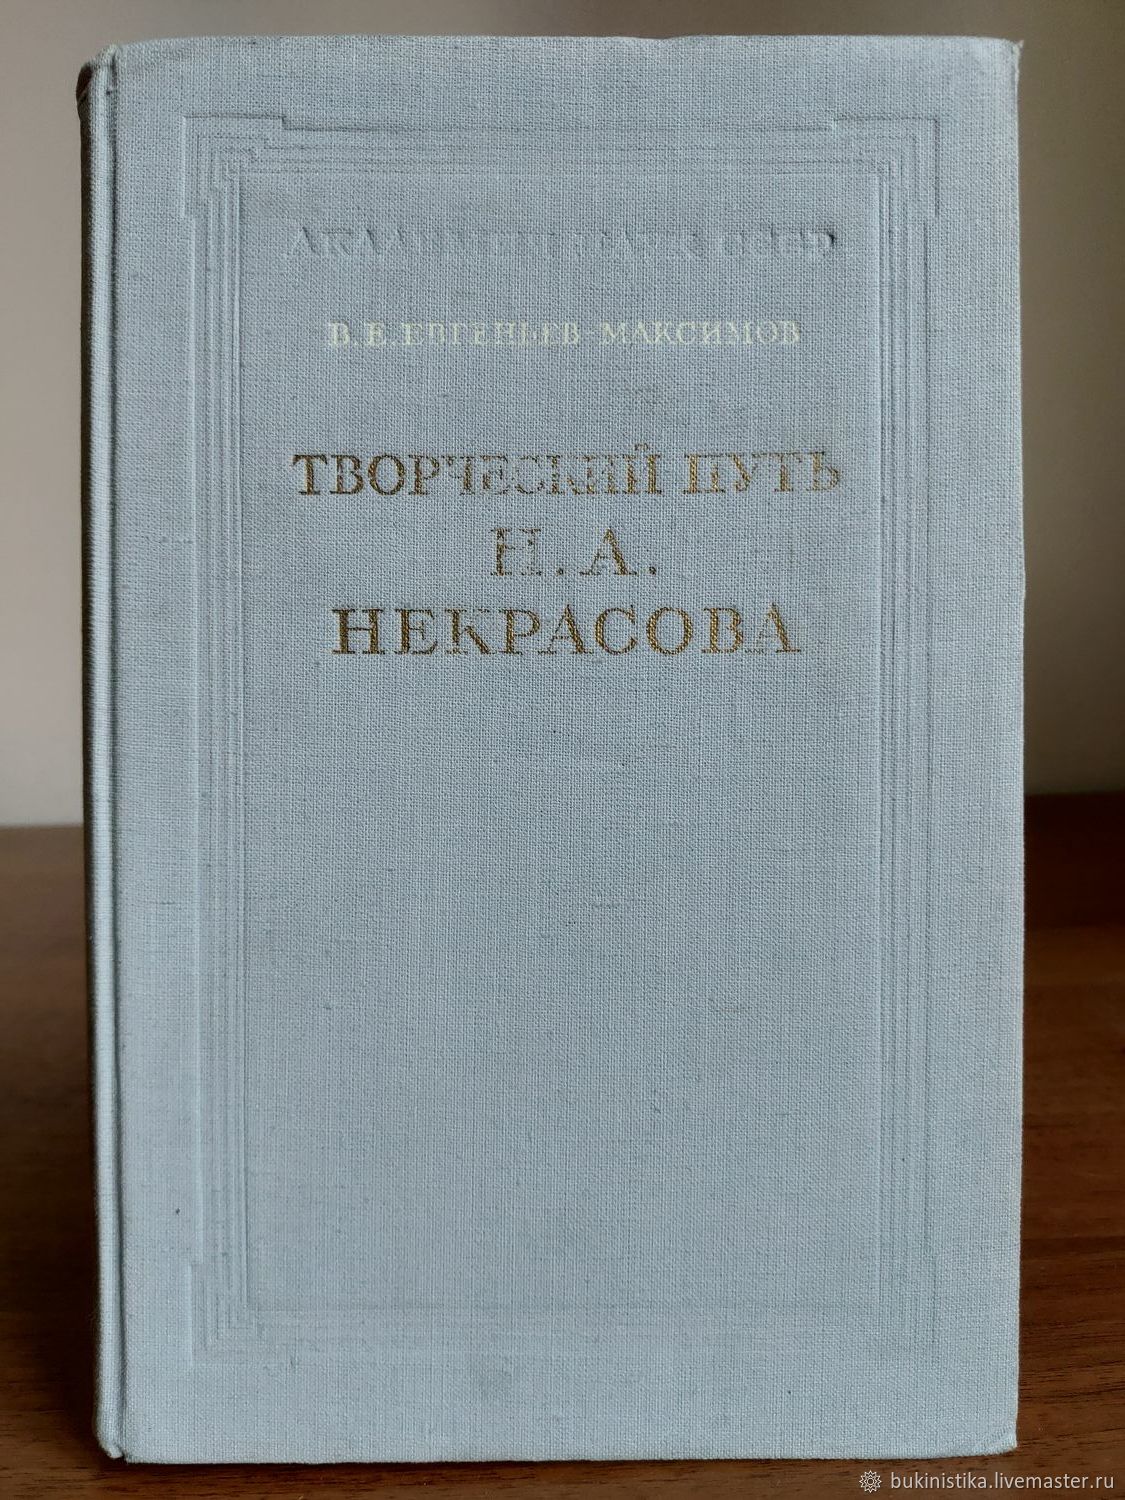 Книга 1953 года. Книги 1953 года. В.Е. Евгеньева-Максимова. Книга CCRU. Наша книга 1953.